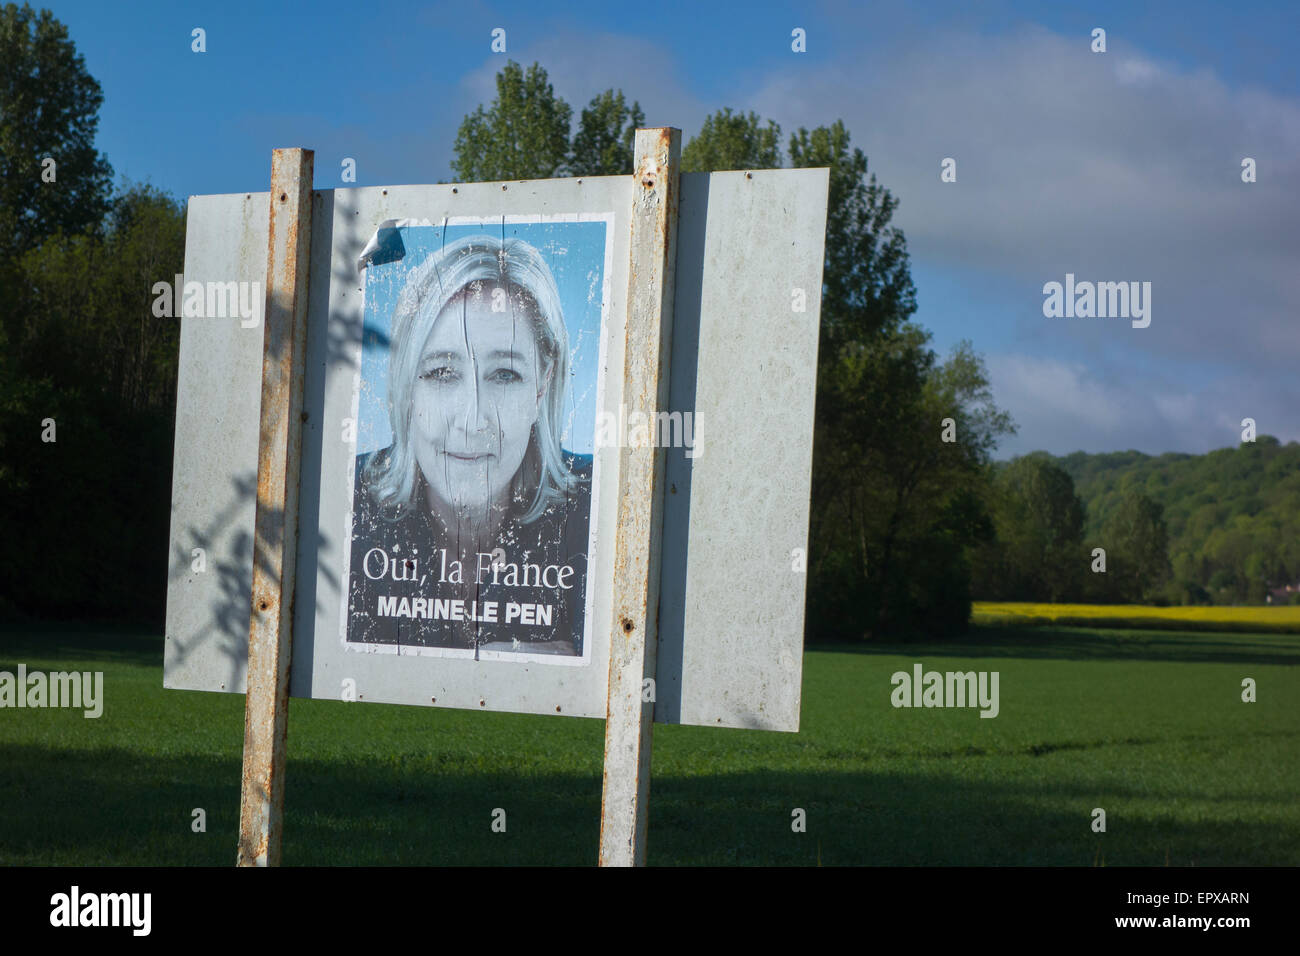 Affiche de politicien de droite Marine Le Pen dans la campagne normande, France Banque D'Images